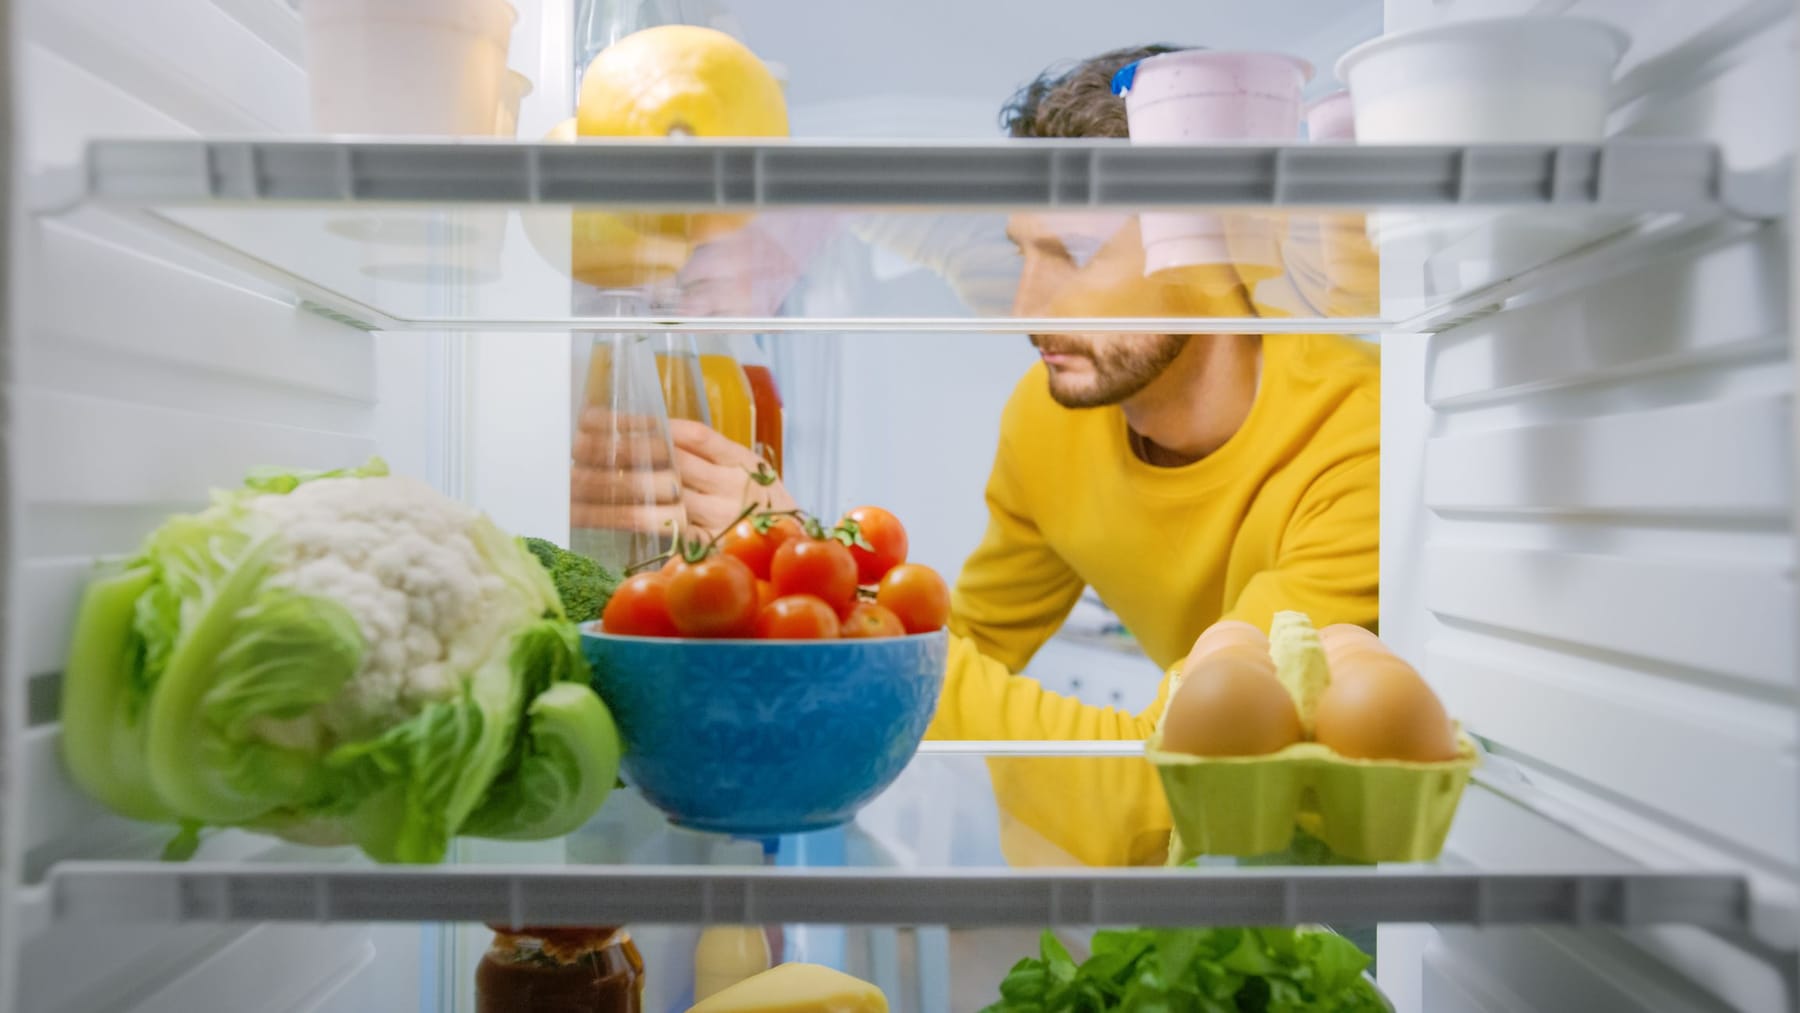 Einbaukühlschrank ohne Gefrierfach - Die besten Modelle 2019 [Ratgeber]